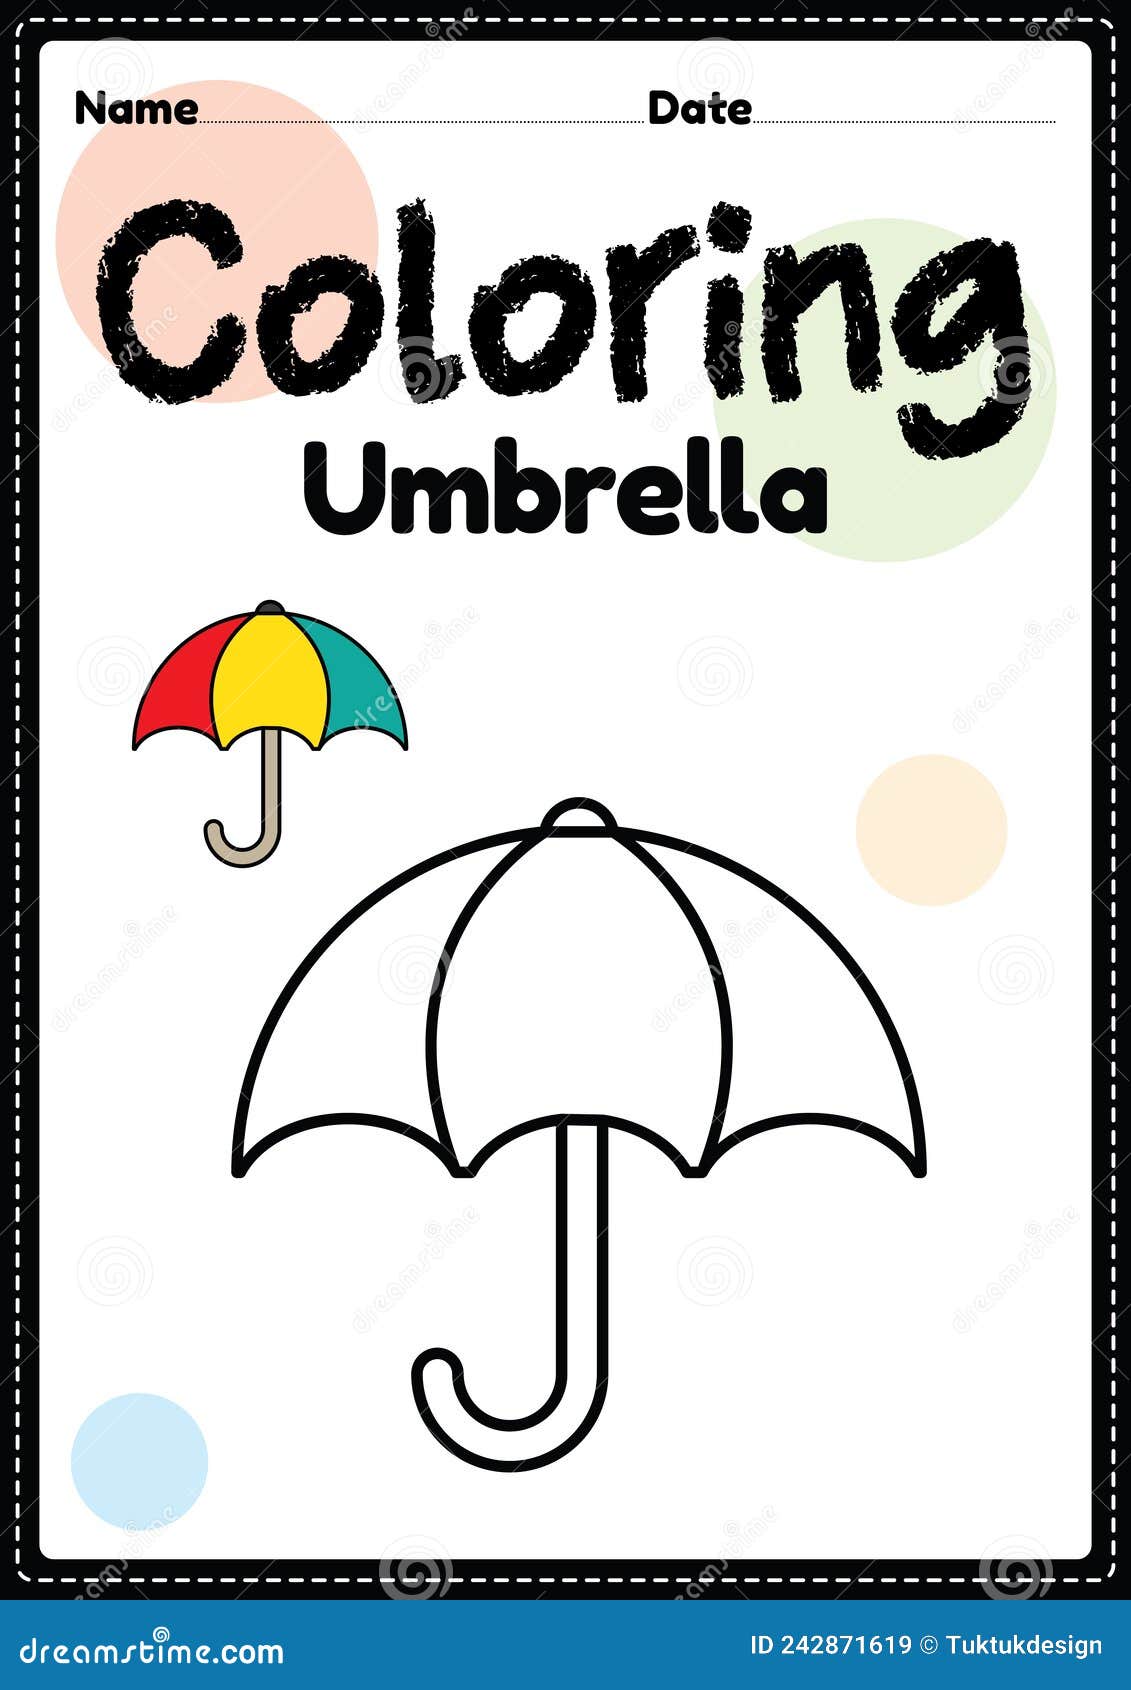 Umbrella coloring page picture worksheet for preschool kindergarten montessori kids to practice coloring activities stock illustration